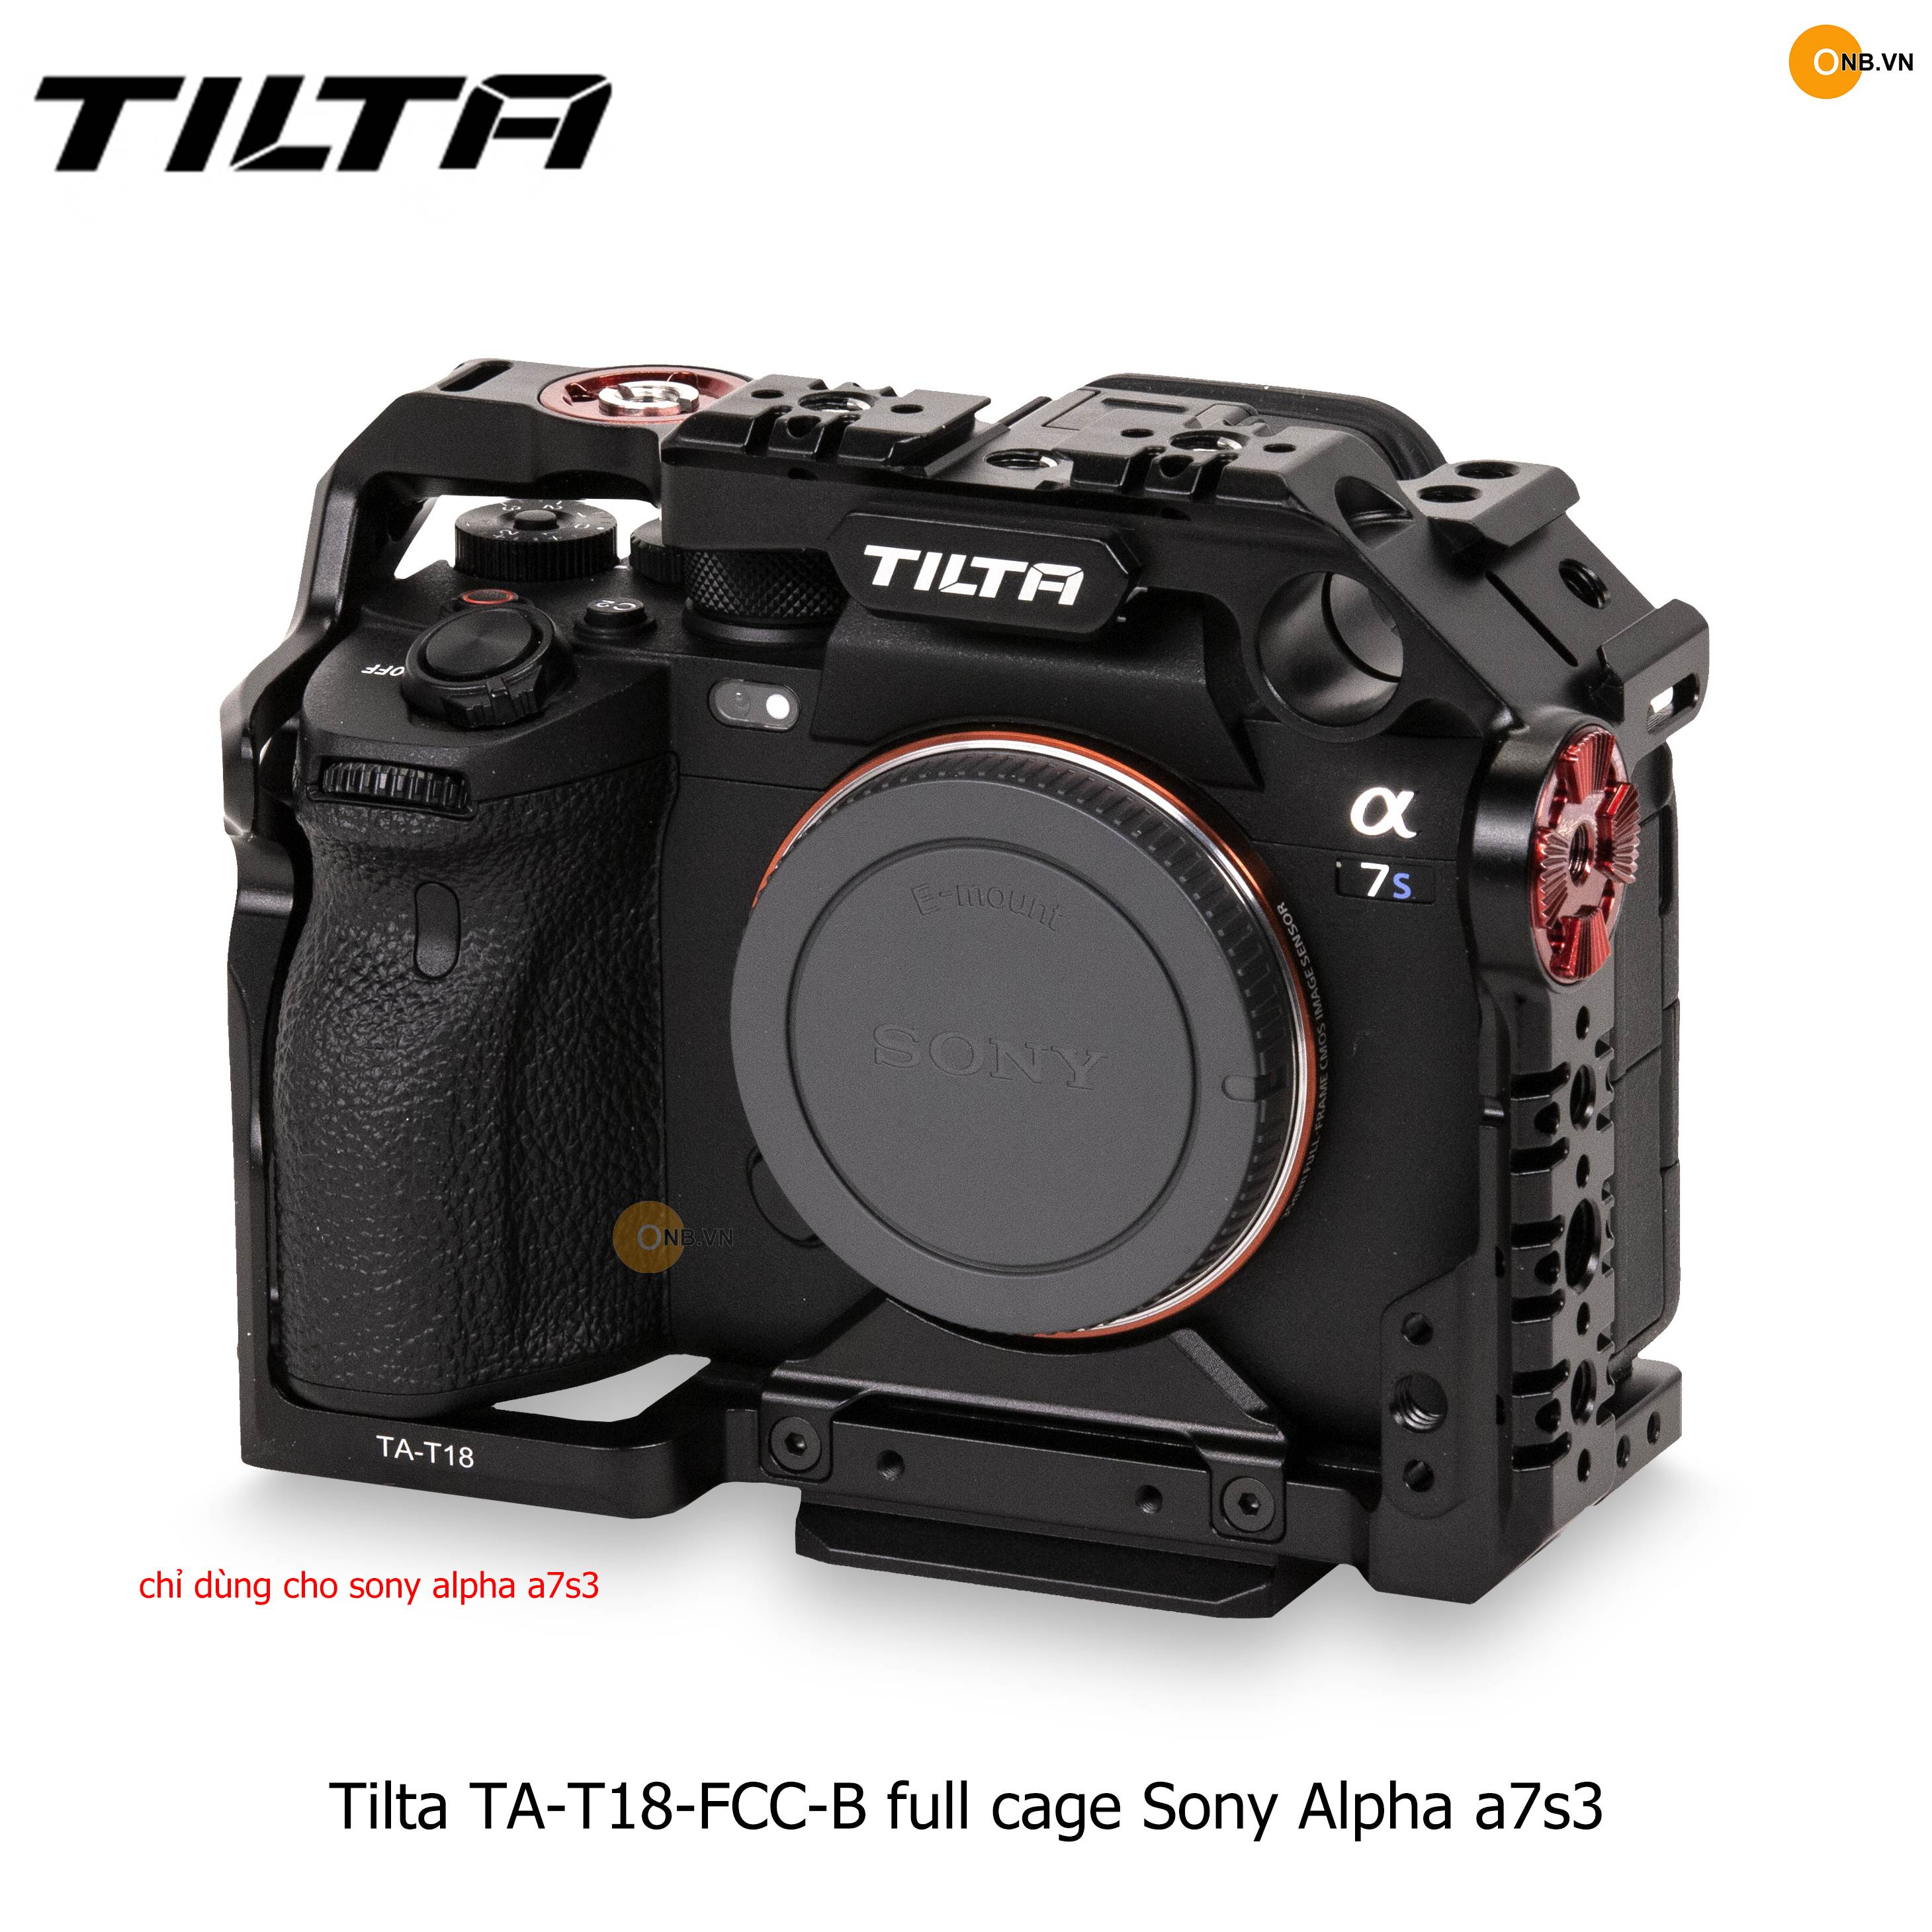 Tilta TA-T18-FCC-B Full Cage Sony Alpha a7s3